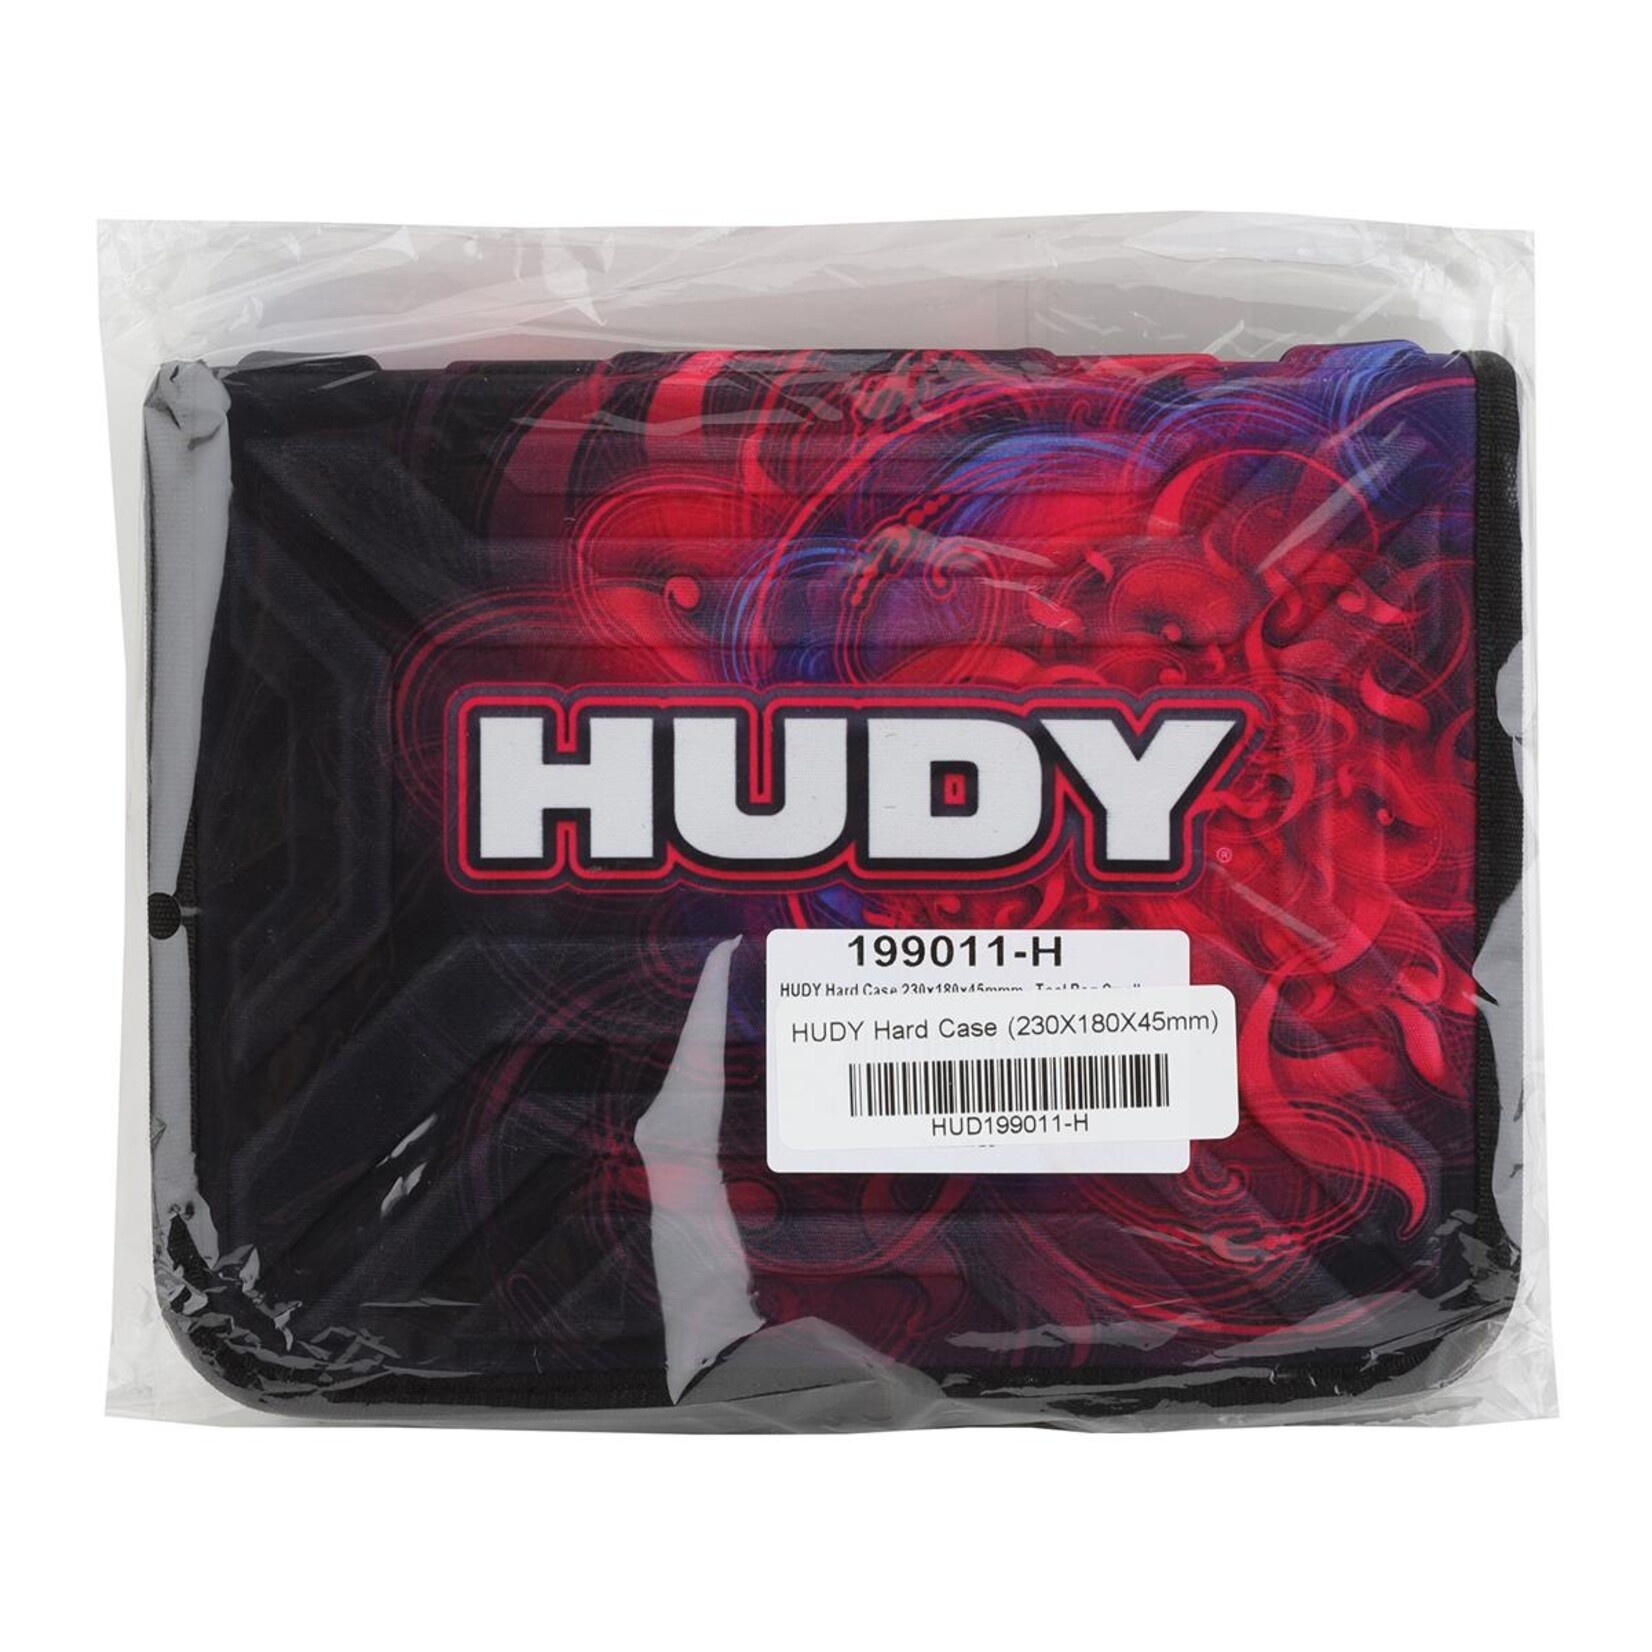 Hudy Hudy Hard Case Tool Bag (Small) #199011-H